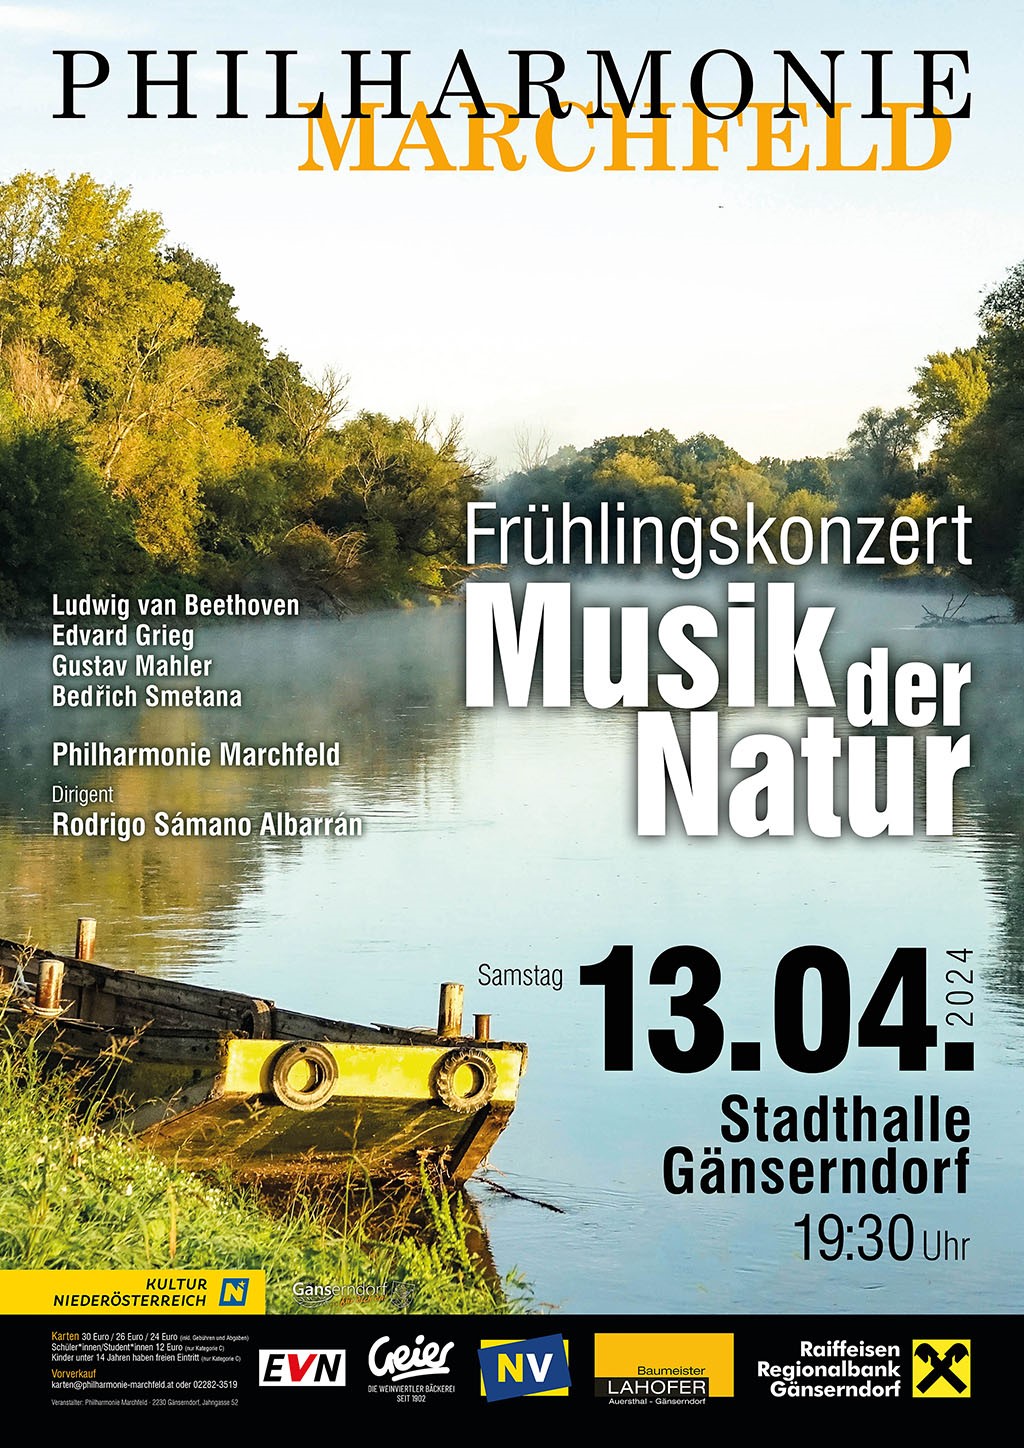 Philharmonie Marchfeld - Frühlingskonzert "Musik der Natur"